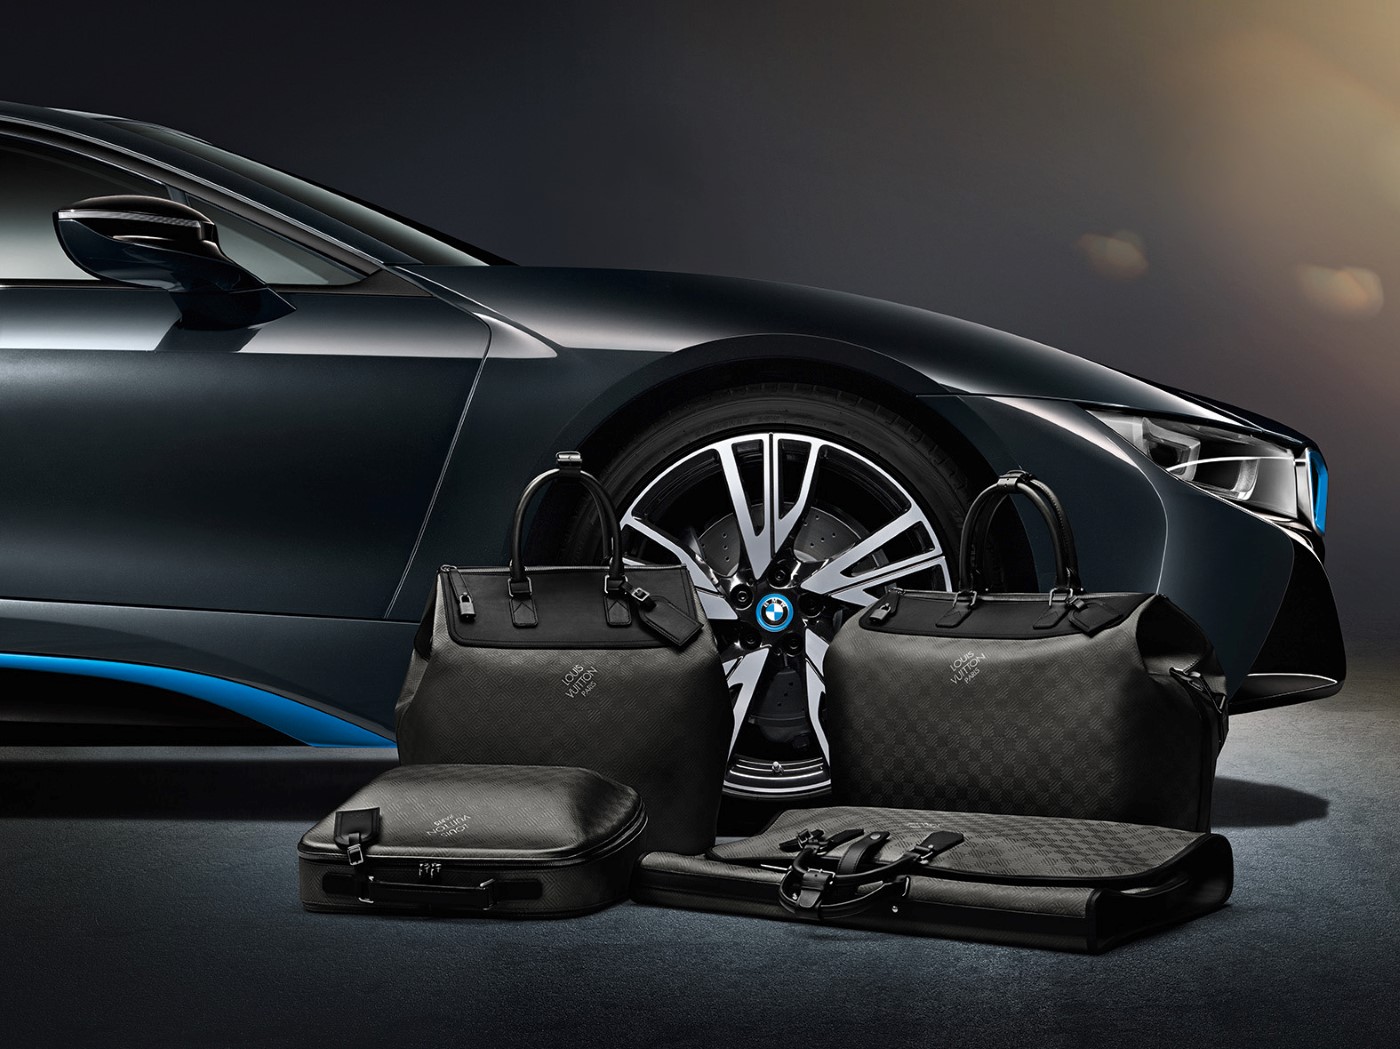 Hills Alive - Luggage set for the i8 - BMW i Forums